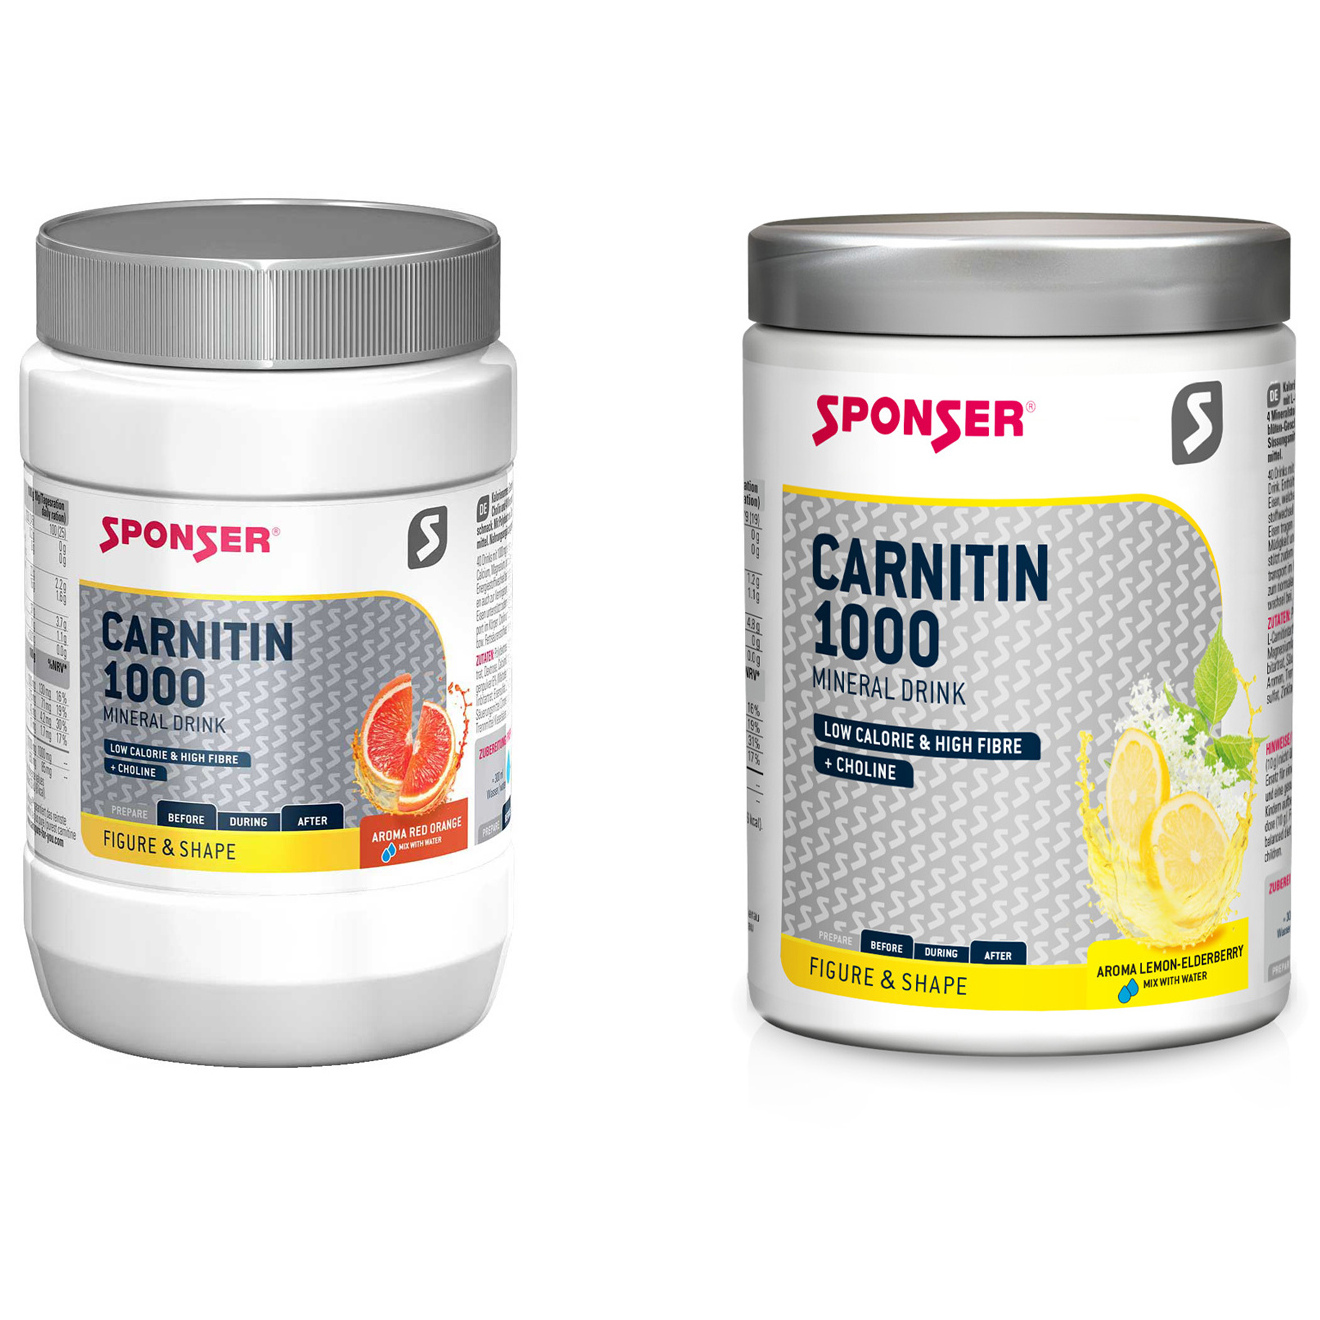 Bild von SPONSER Carnitin 1000 Mineral Drink - Elektrolyt-Getränkepulver - 400g